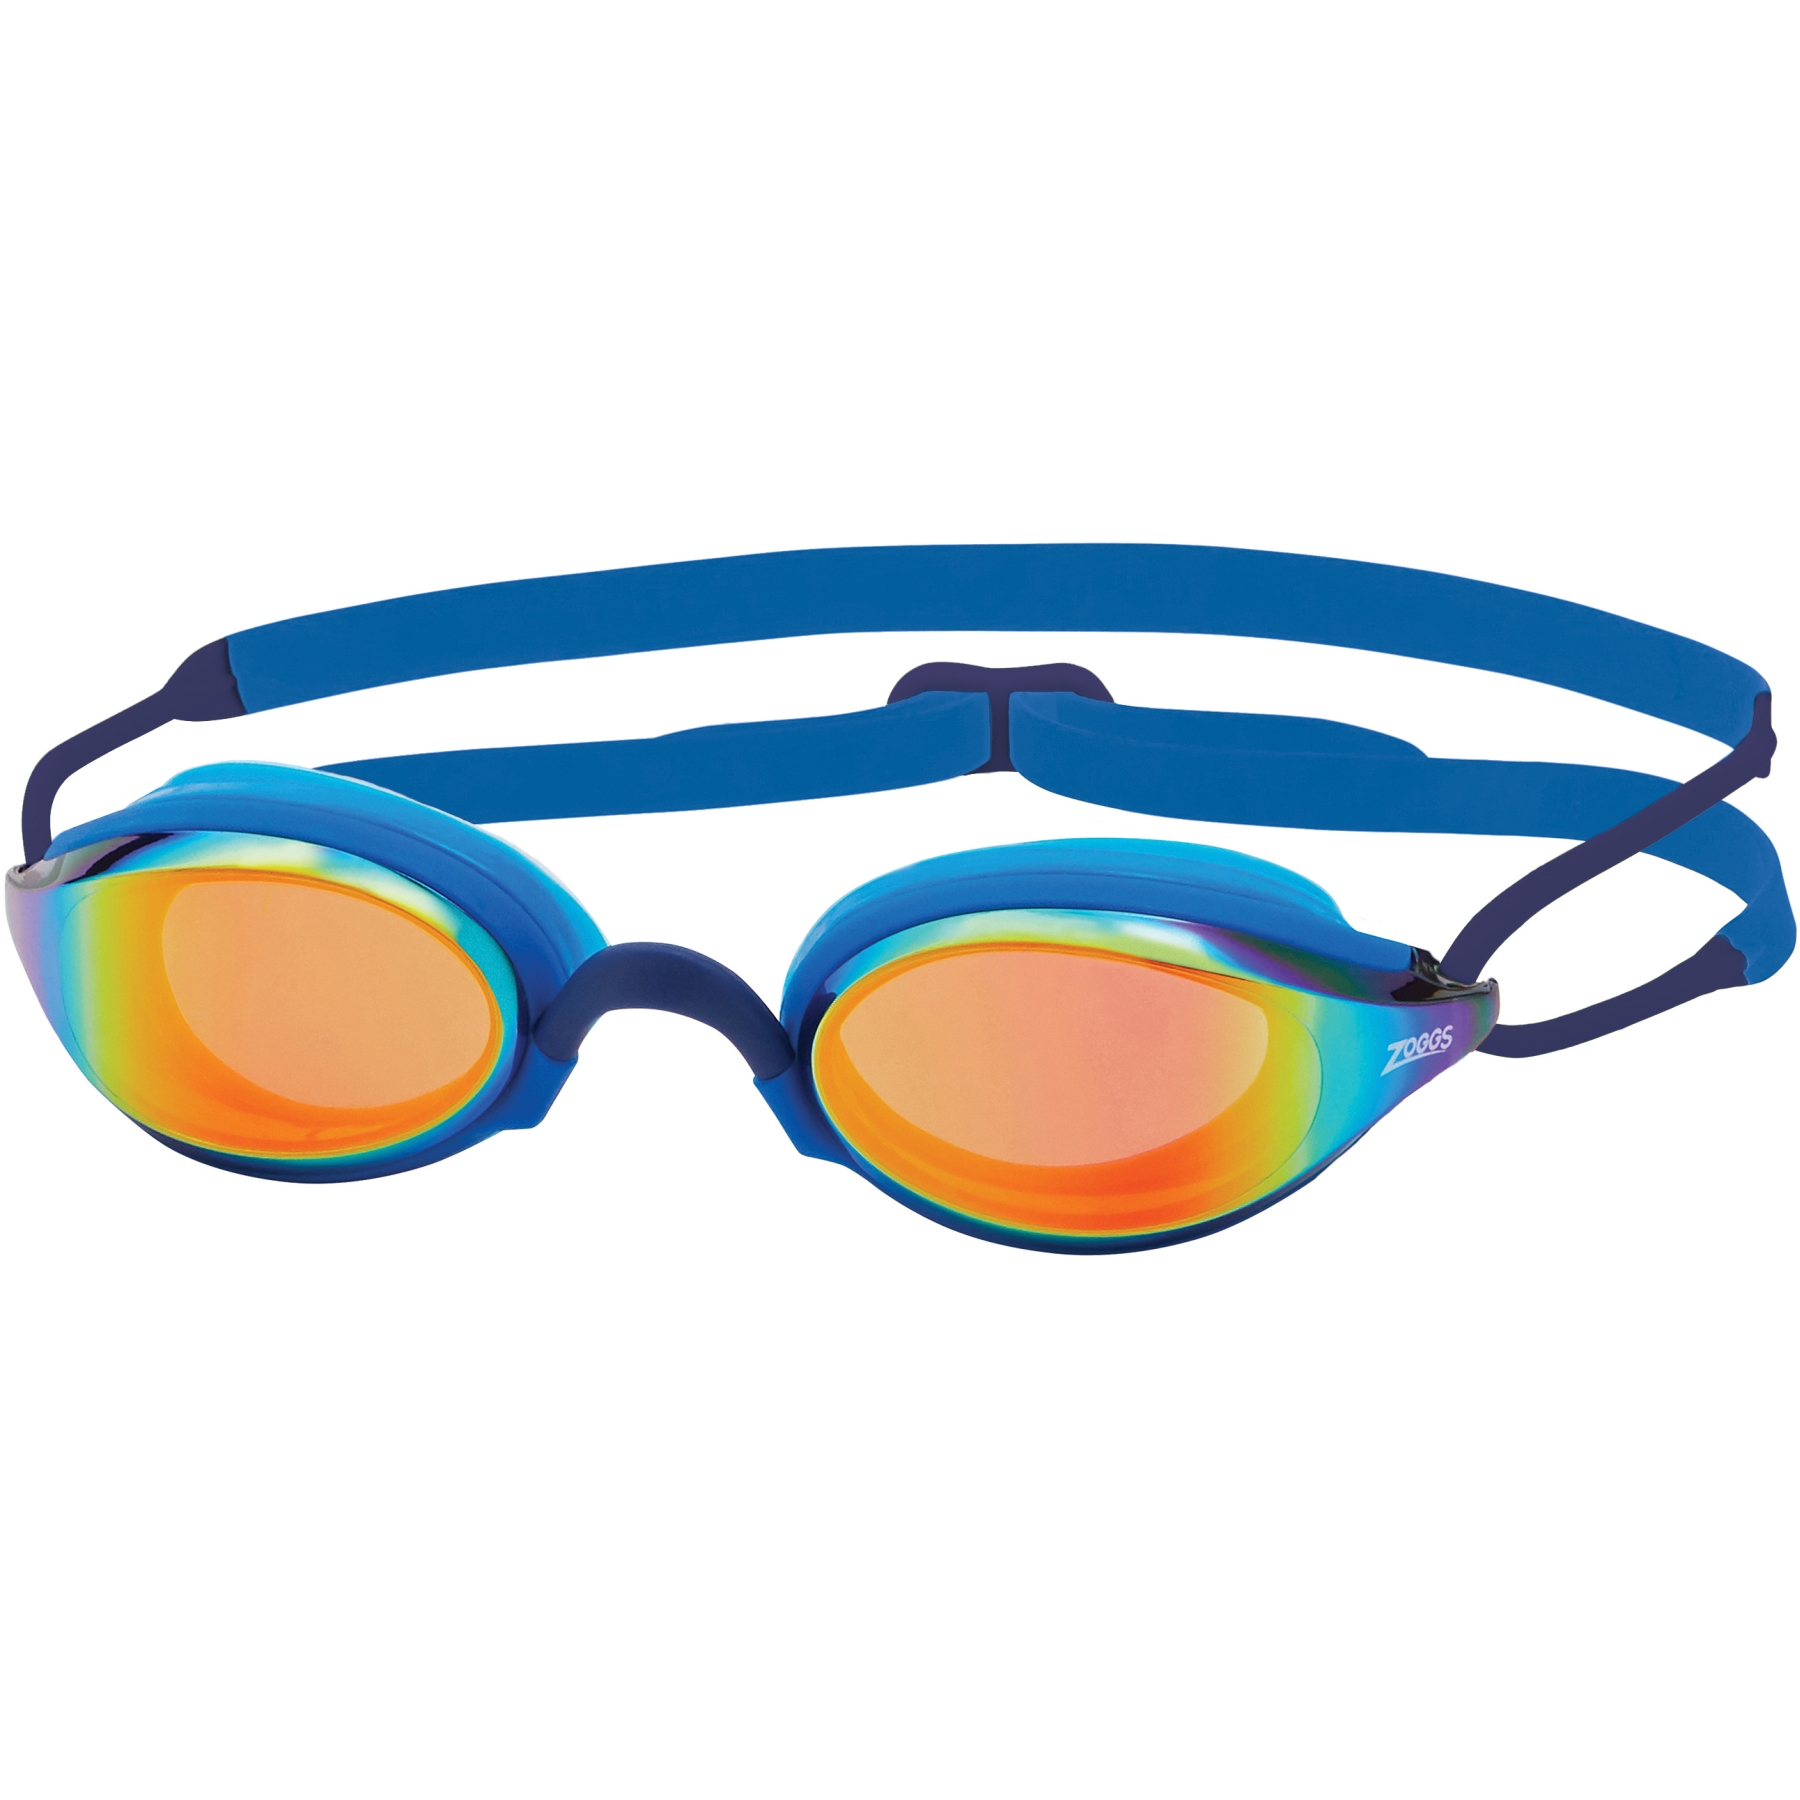 Produktbild von Zoggs Fusion Air Titanium Schwimmbrille - Verspiegelte Gläser: Blau - Blau/Blau